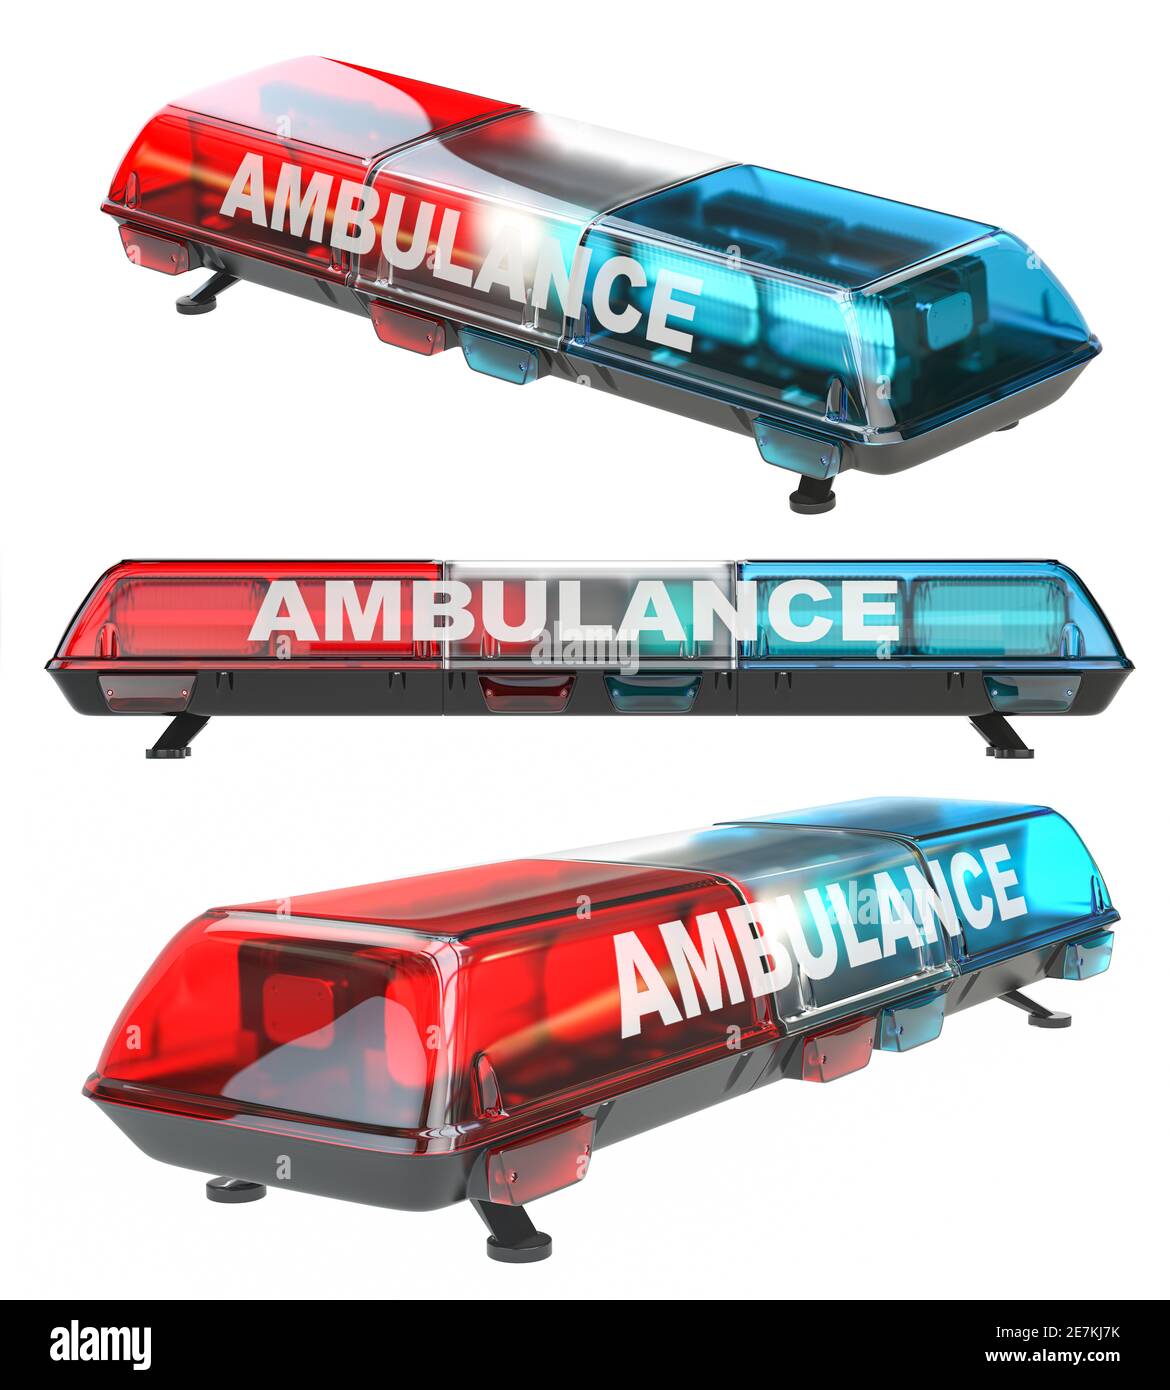 Ambulance car siren emergency light isolated on white background. 3d illustration Stock Photo